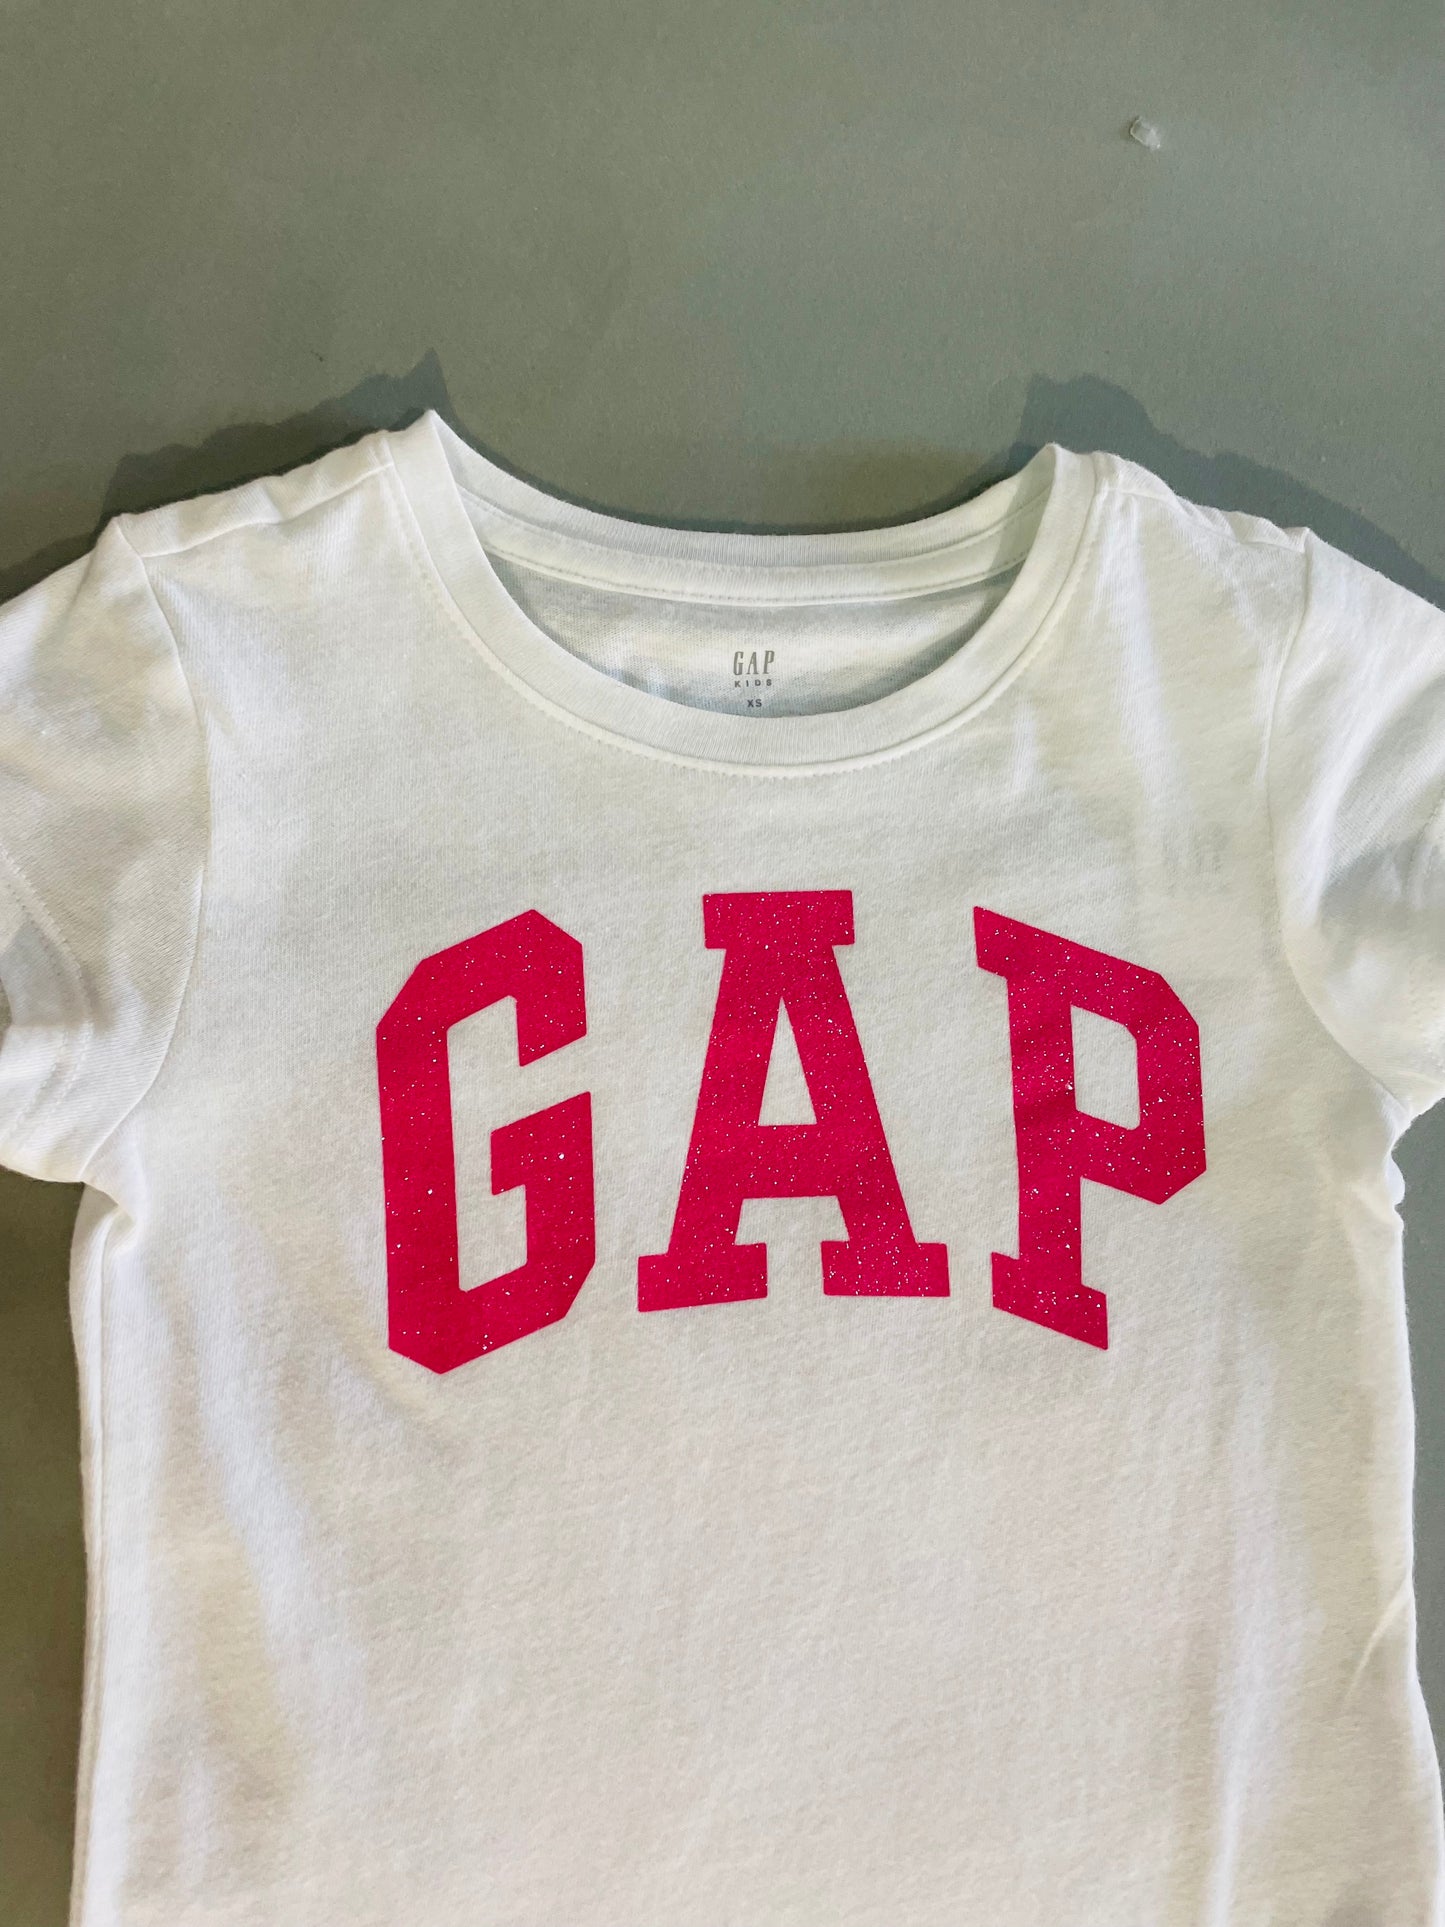 Gap kids shirt